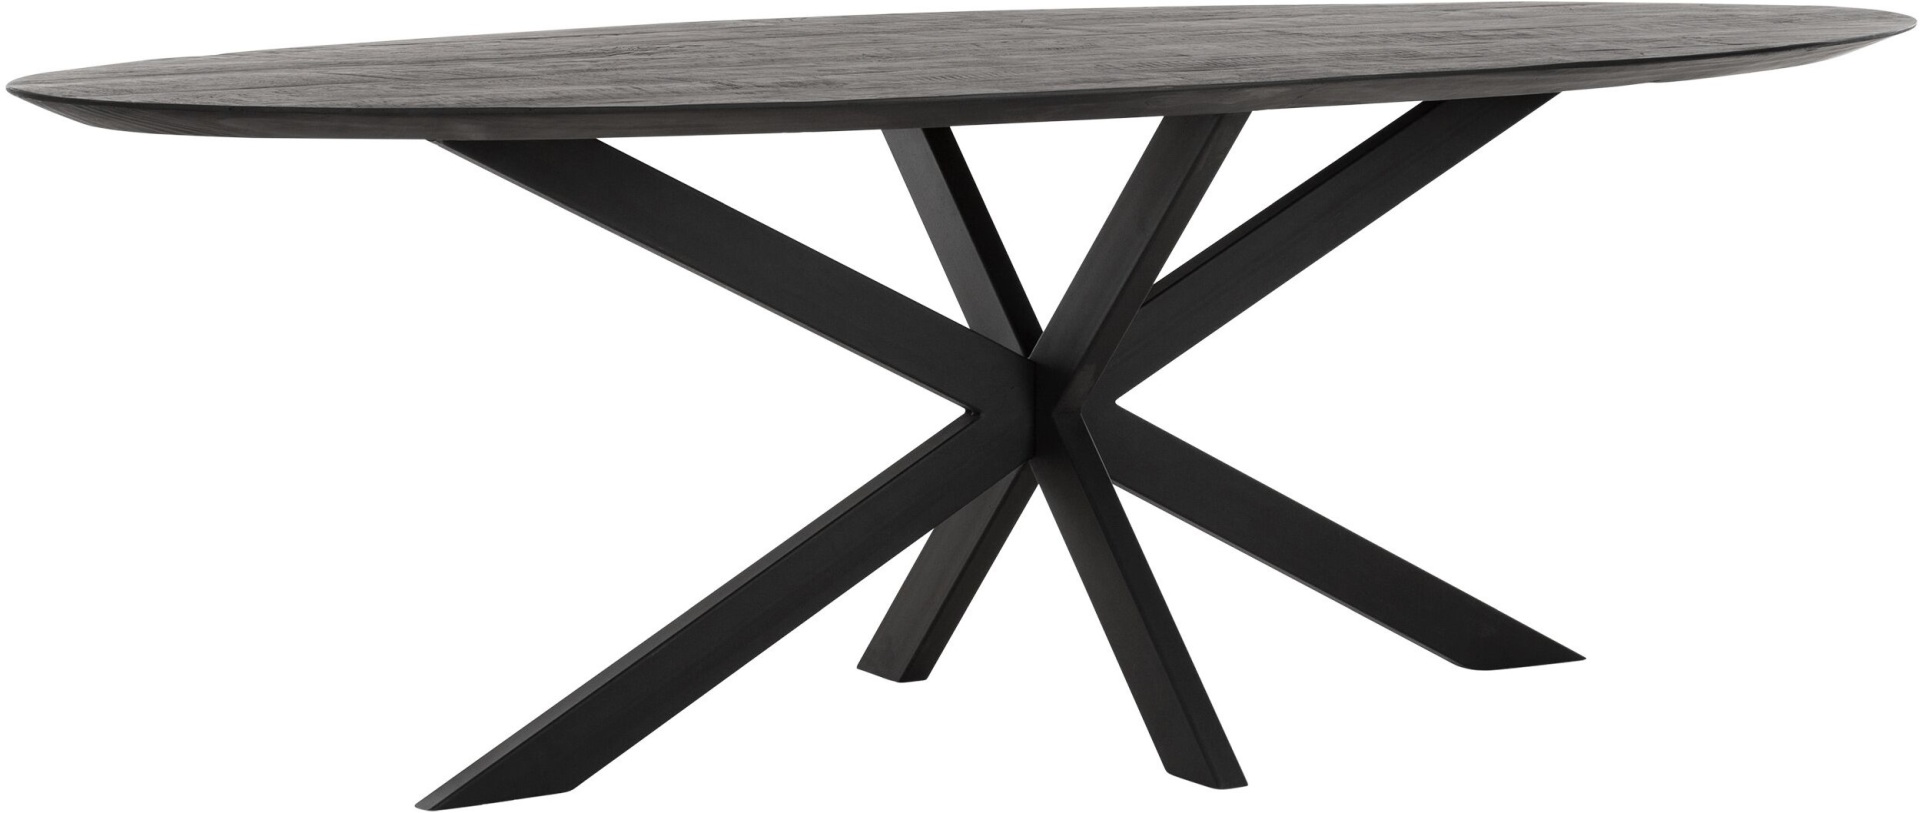 Der Esstisch Shapes überzeugt mit seinem modernem aber auch massivem Design. Gefertigt wurde der Tisch aus recyceltem Teakholz, welches einen schwarzen Farbton besitzt. Das Gestell ist aus Metall und ist Schwarz. Der Tisch hat eine Länge von 240 cm.